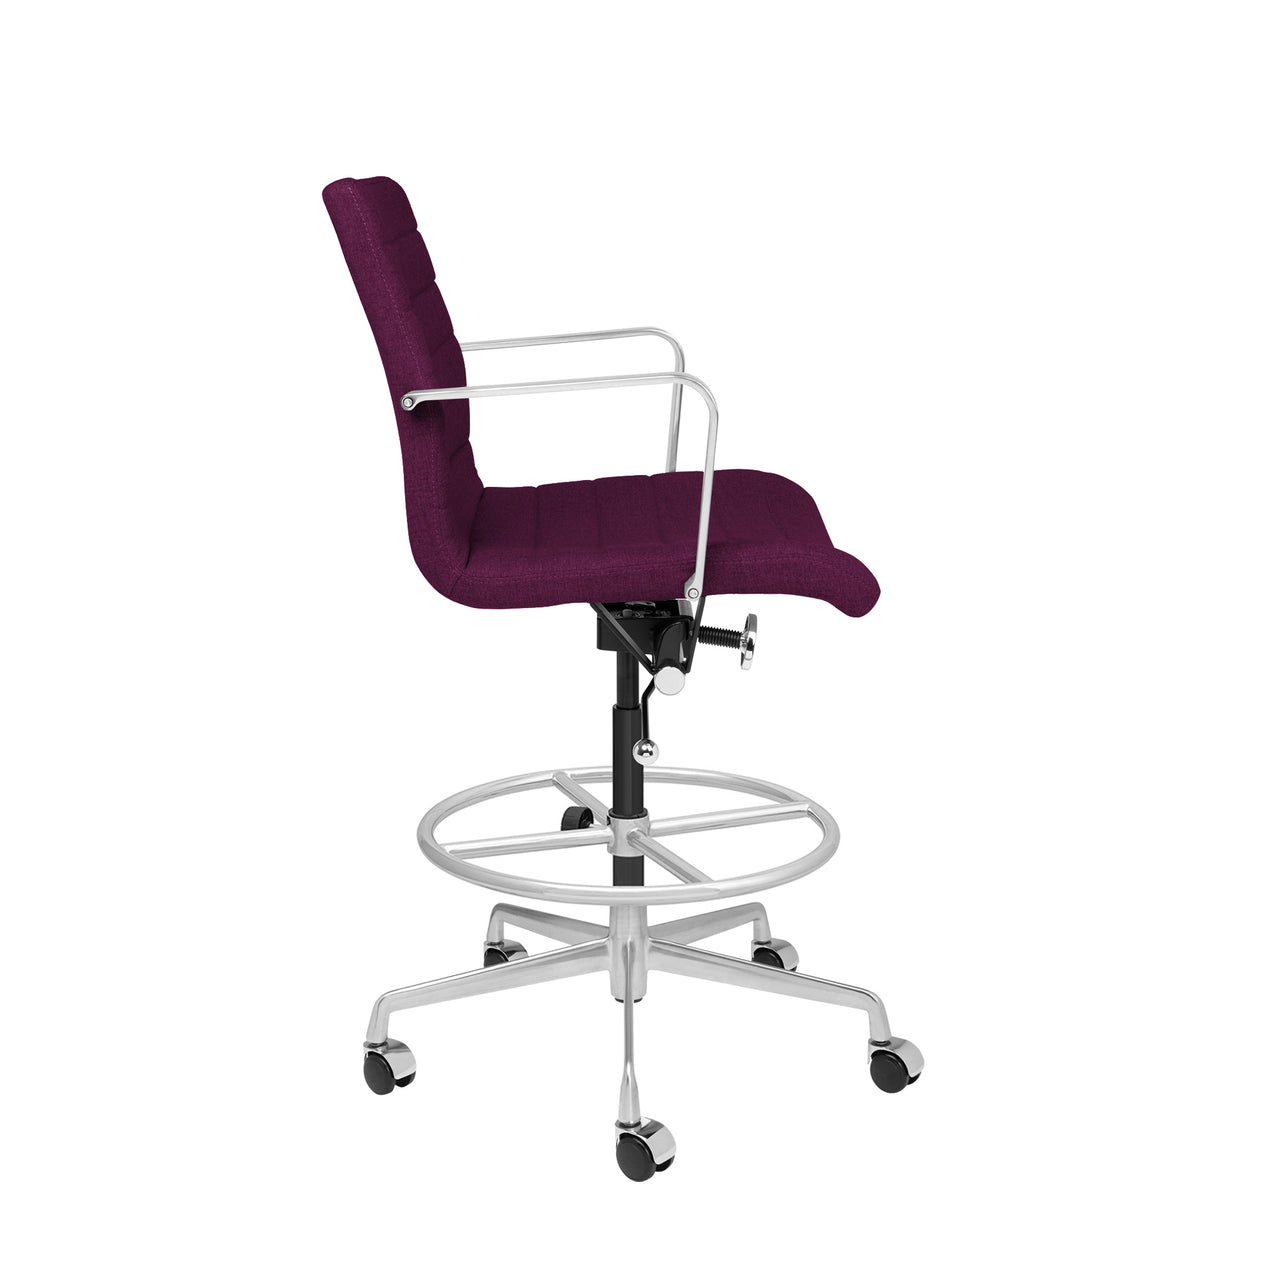 SHIPS FEB 18TH - SOHO Ribbed Drafting Chair (Purple Fabric)